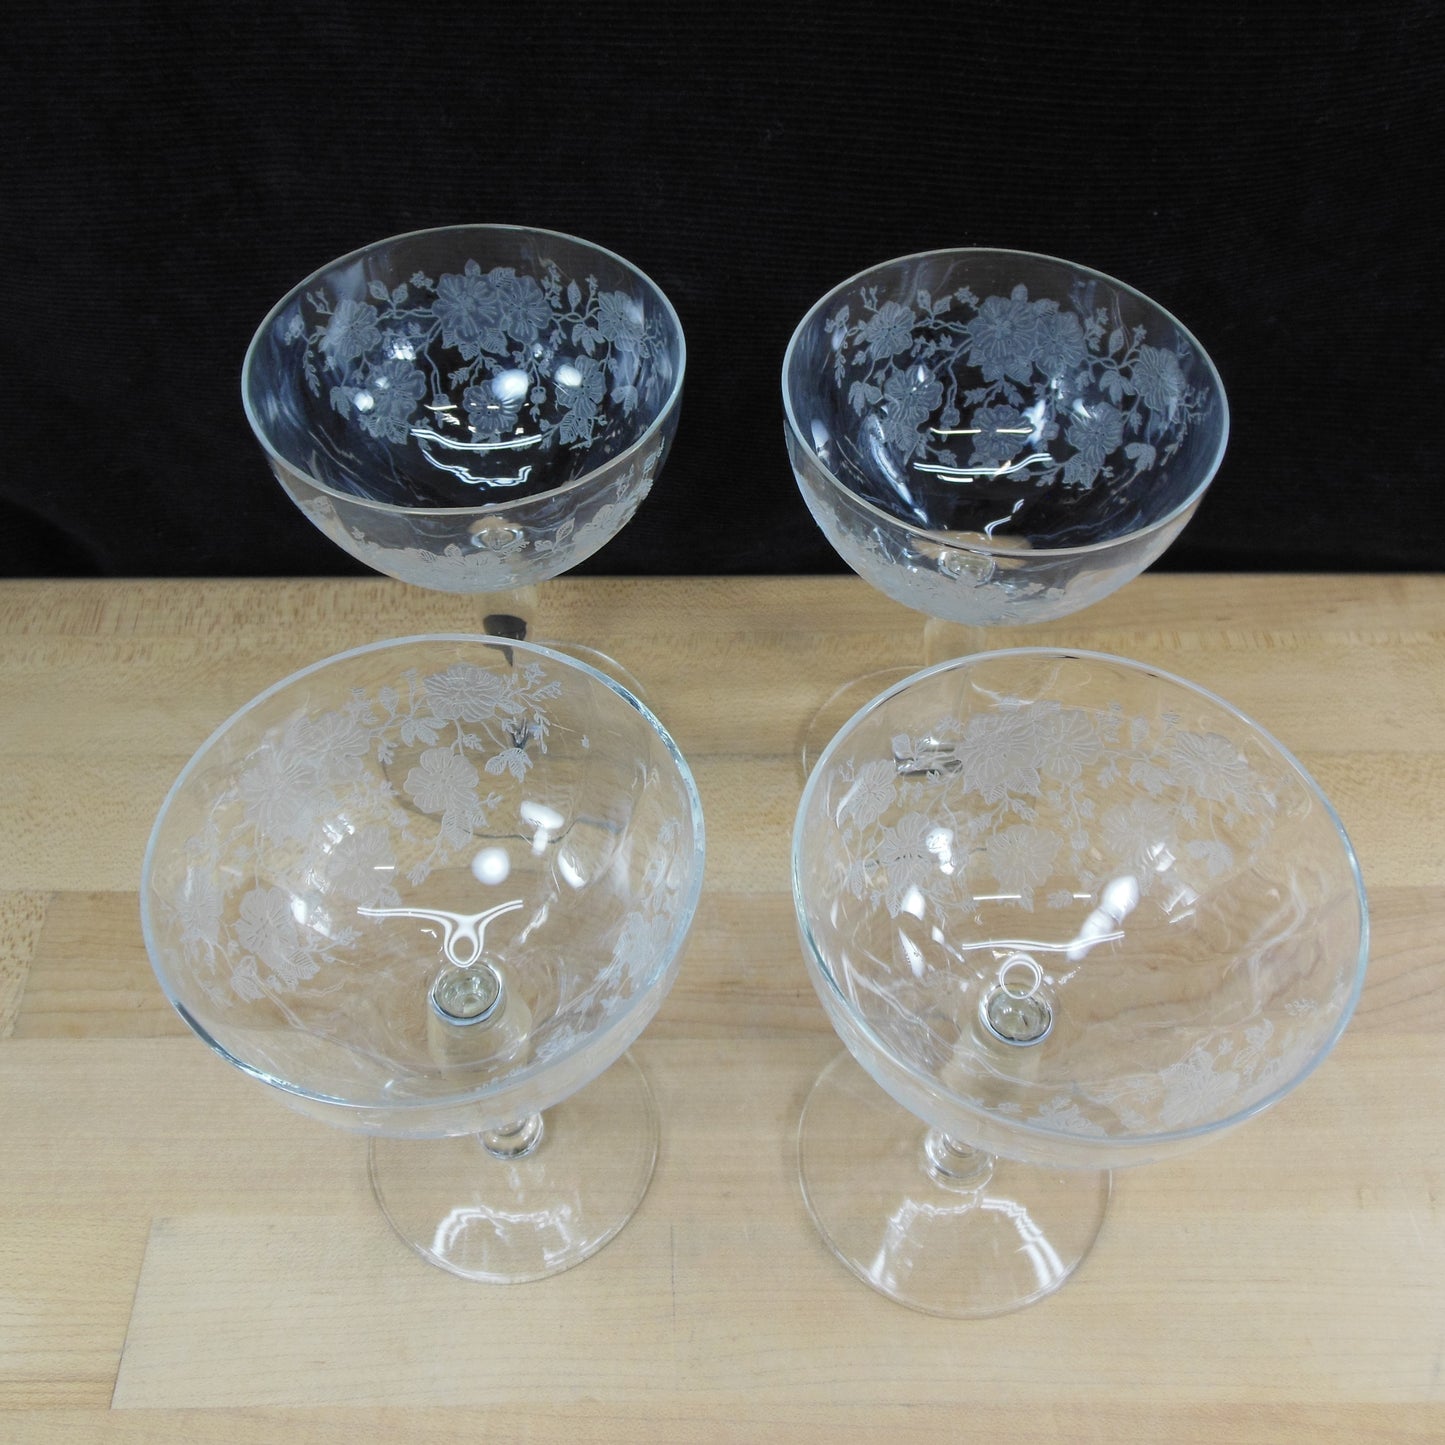 Unknown Maker UNK2629 Elegant Floral Etched Crystal Wine Glass Goblet - 4 Set Used